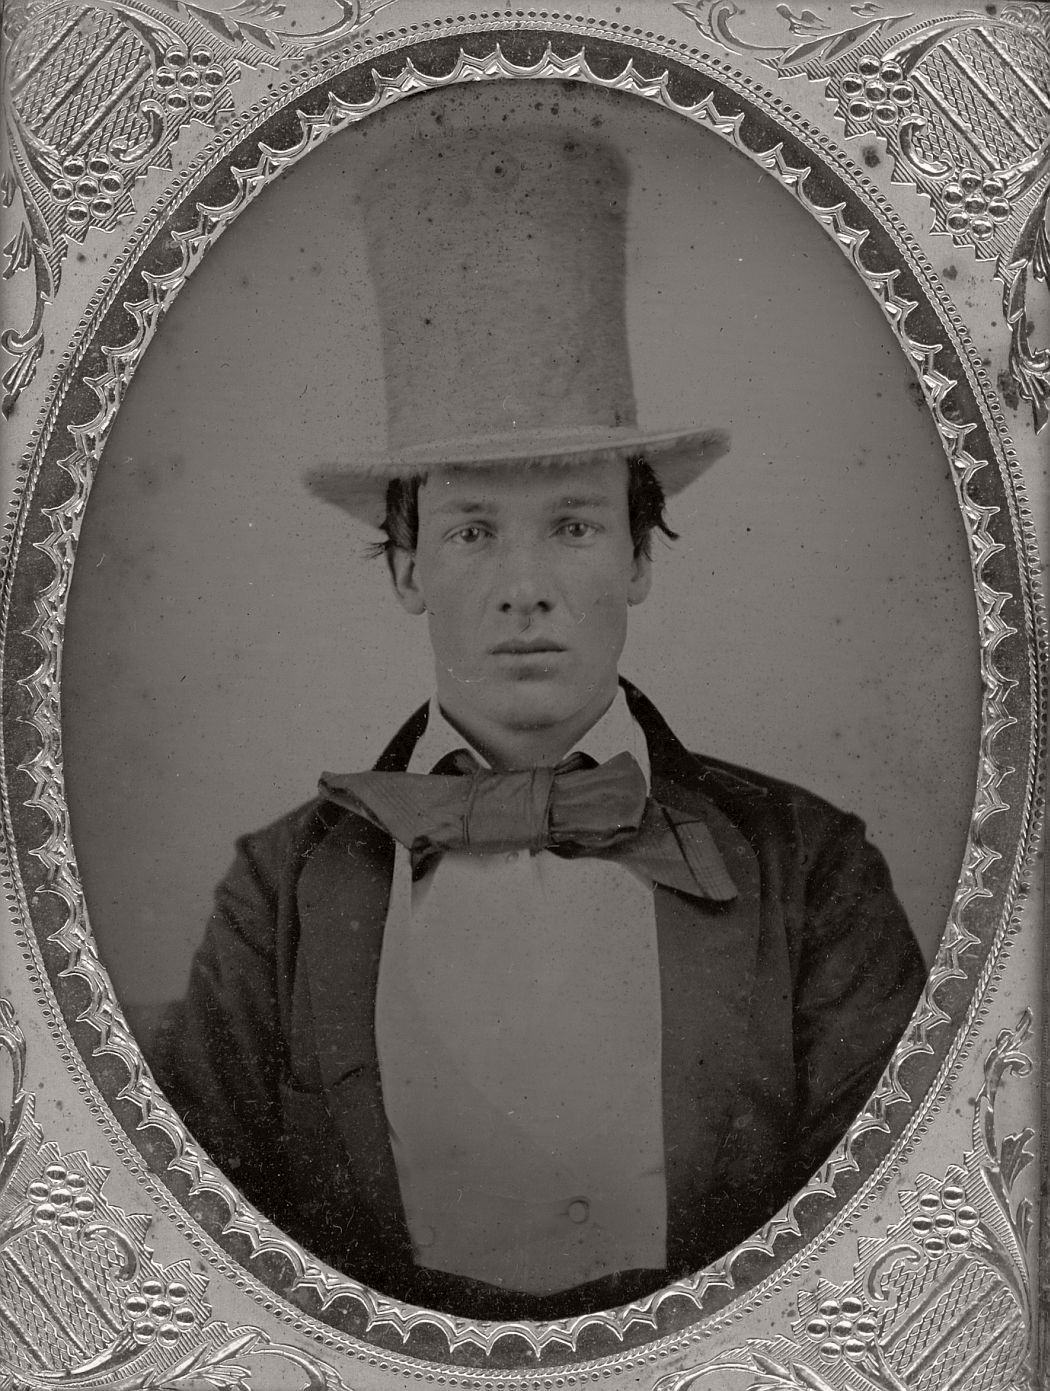 victorian-era-daguerreotype-of-men-in-hat-1850s-xix-century-10